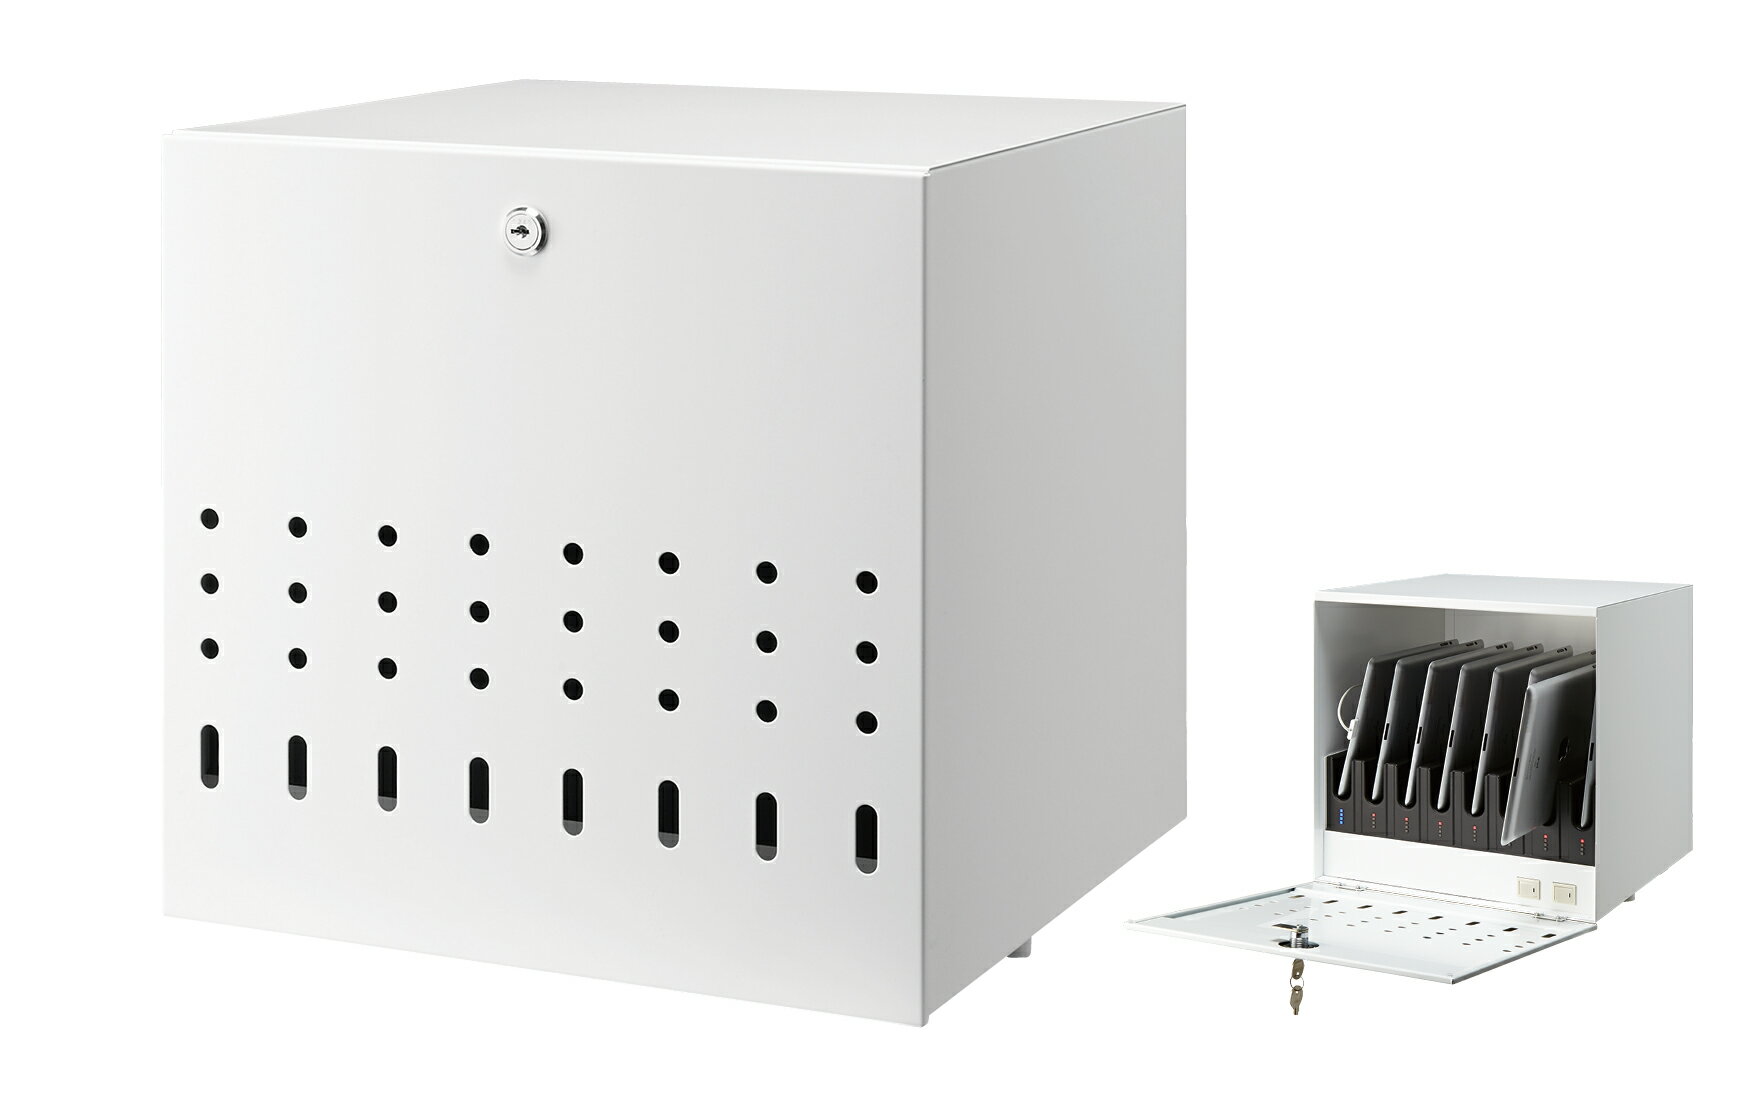 【2台セット価格】AURORA TCS-8C タブレットPCをコンパクトに一括充電&同期 (鍵付きキャビネットタイプ)